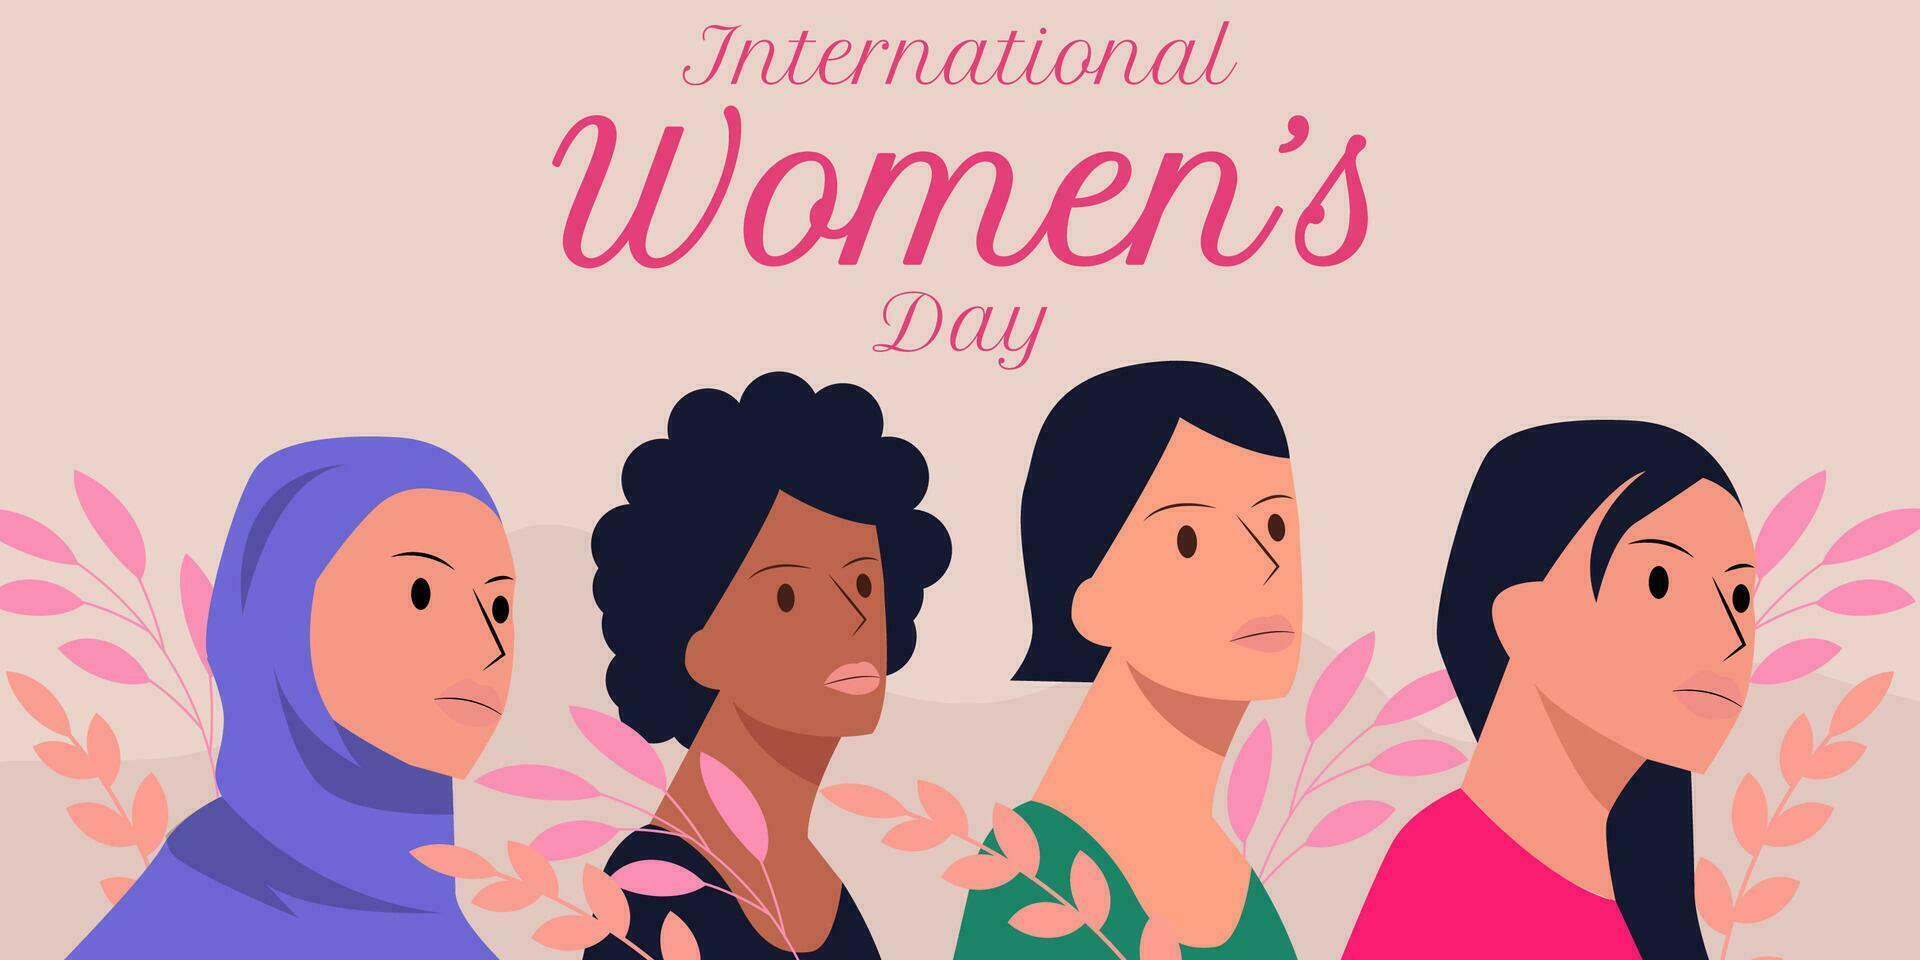 International Women's Day horizontal banner illustration vector design